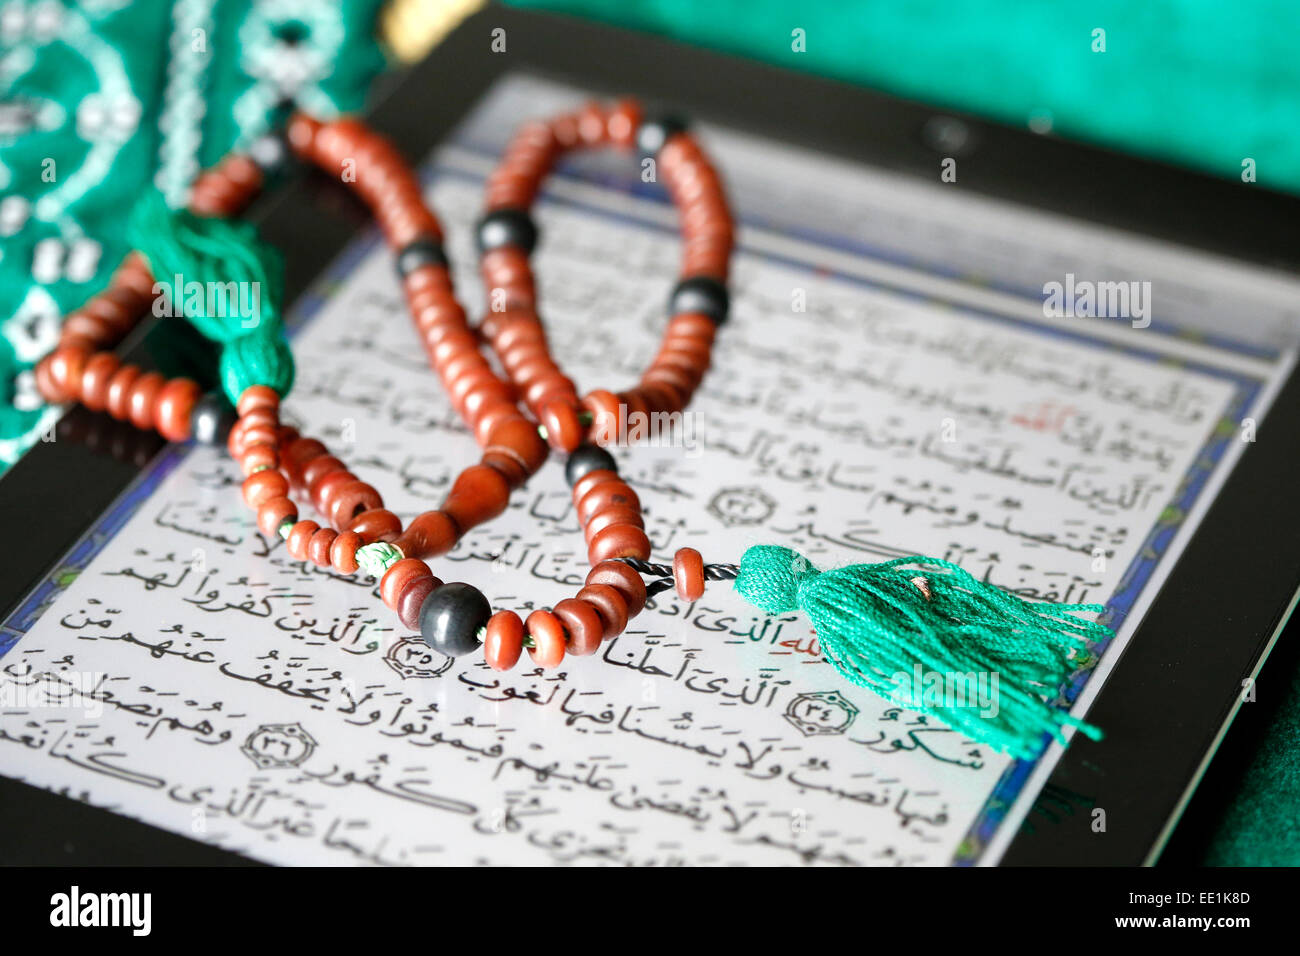 Elektronische Koran auf einem Ipad, Paris, Frankreich, Europa Stockfoto